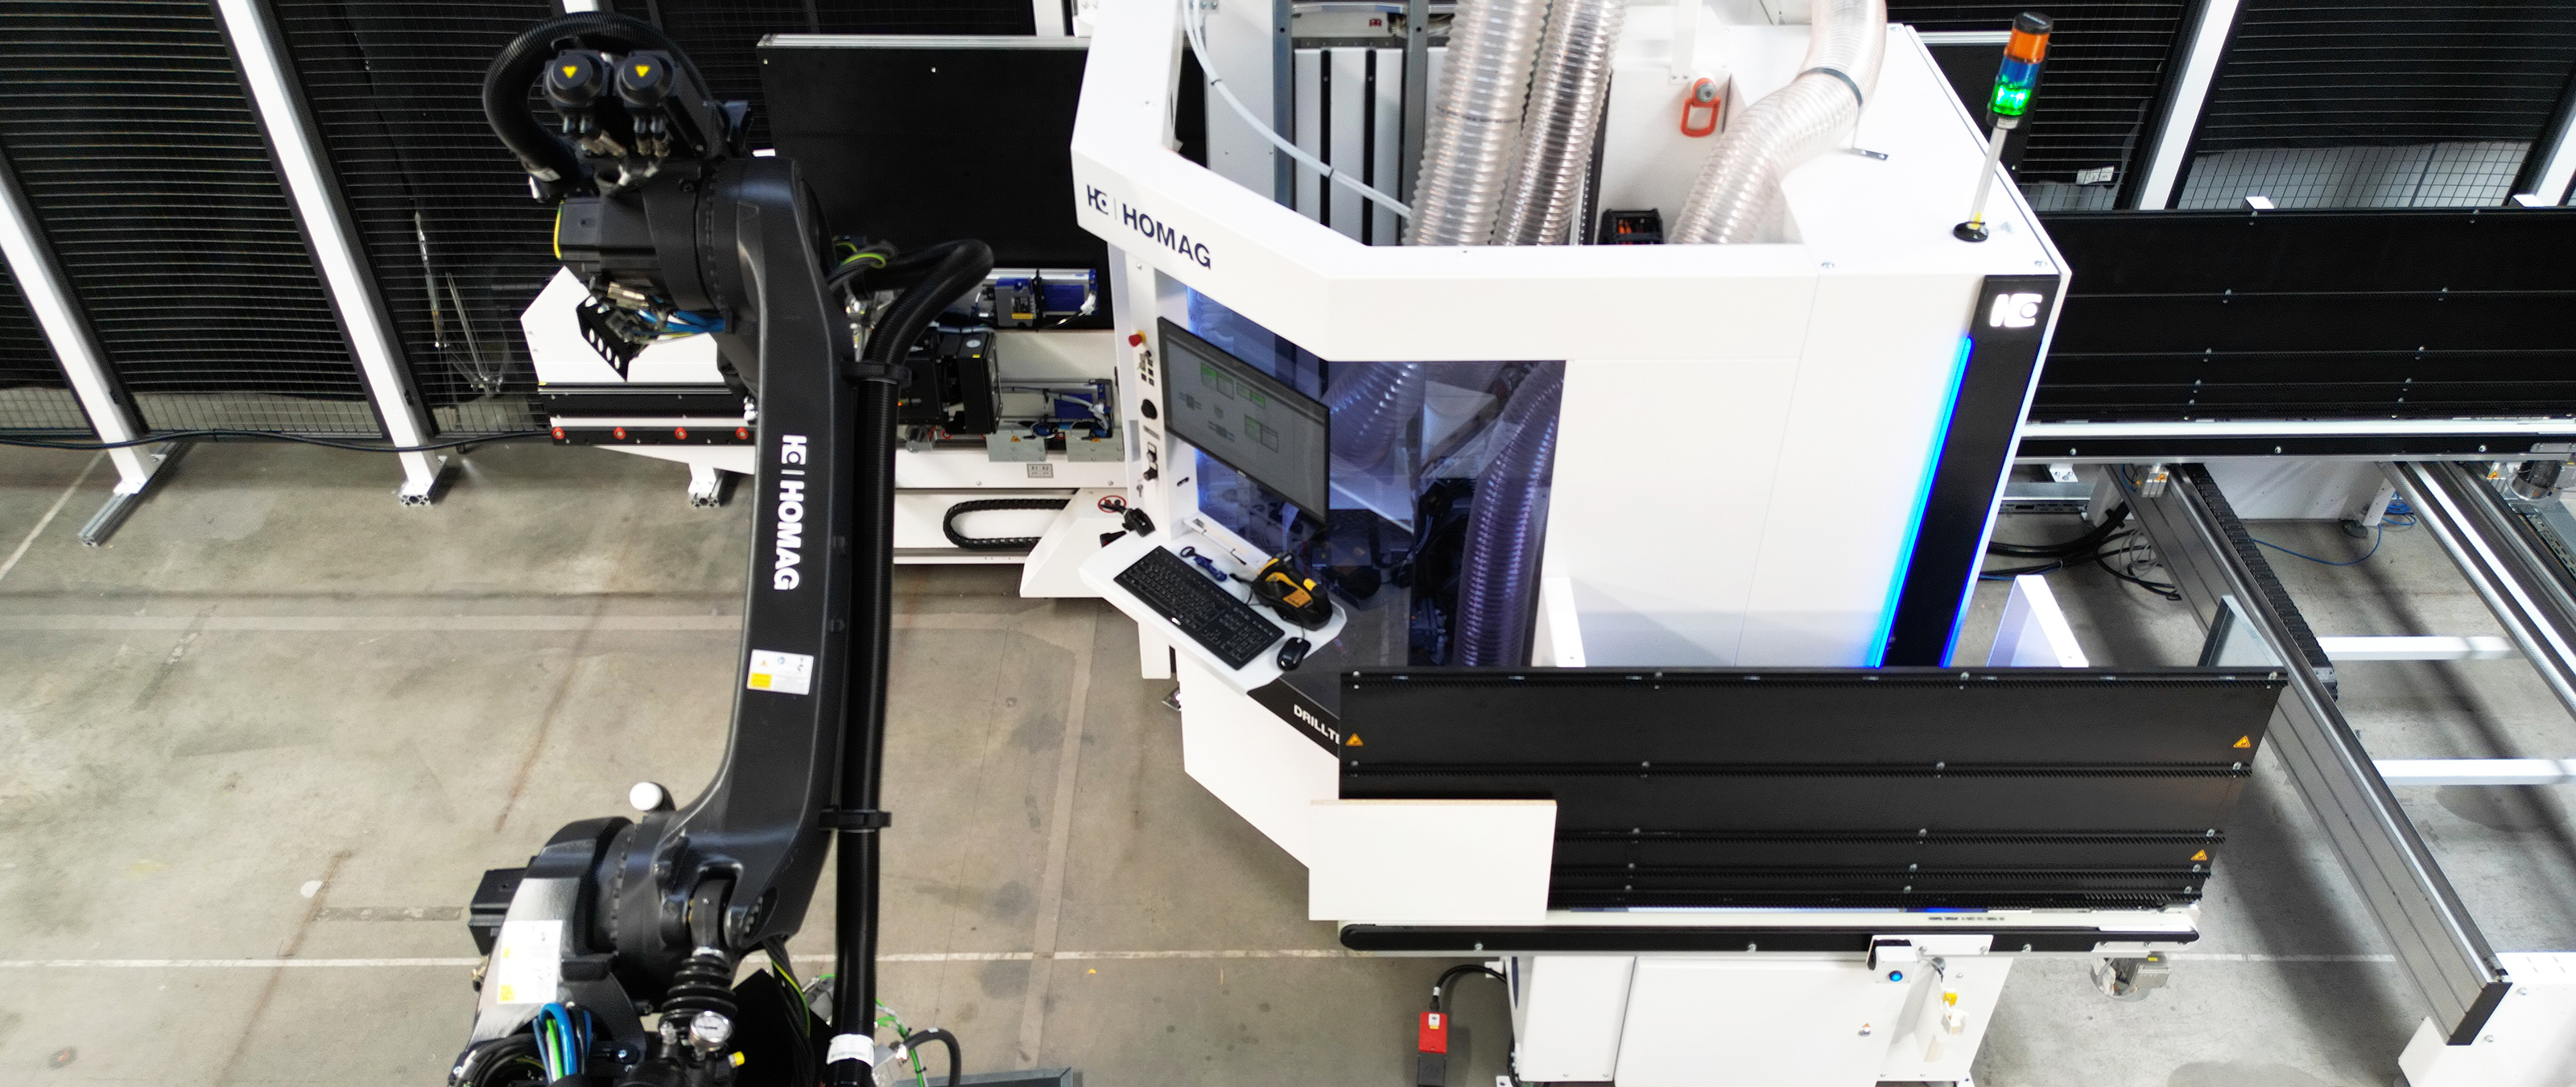 Manipulación de robots FEEDBOT D-310 en el centro de mecanizado CNC vertical DRILLTEQ V-310